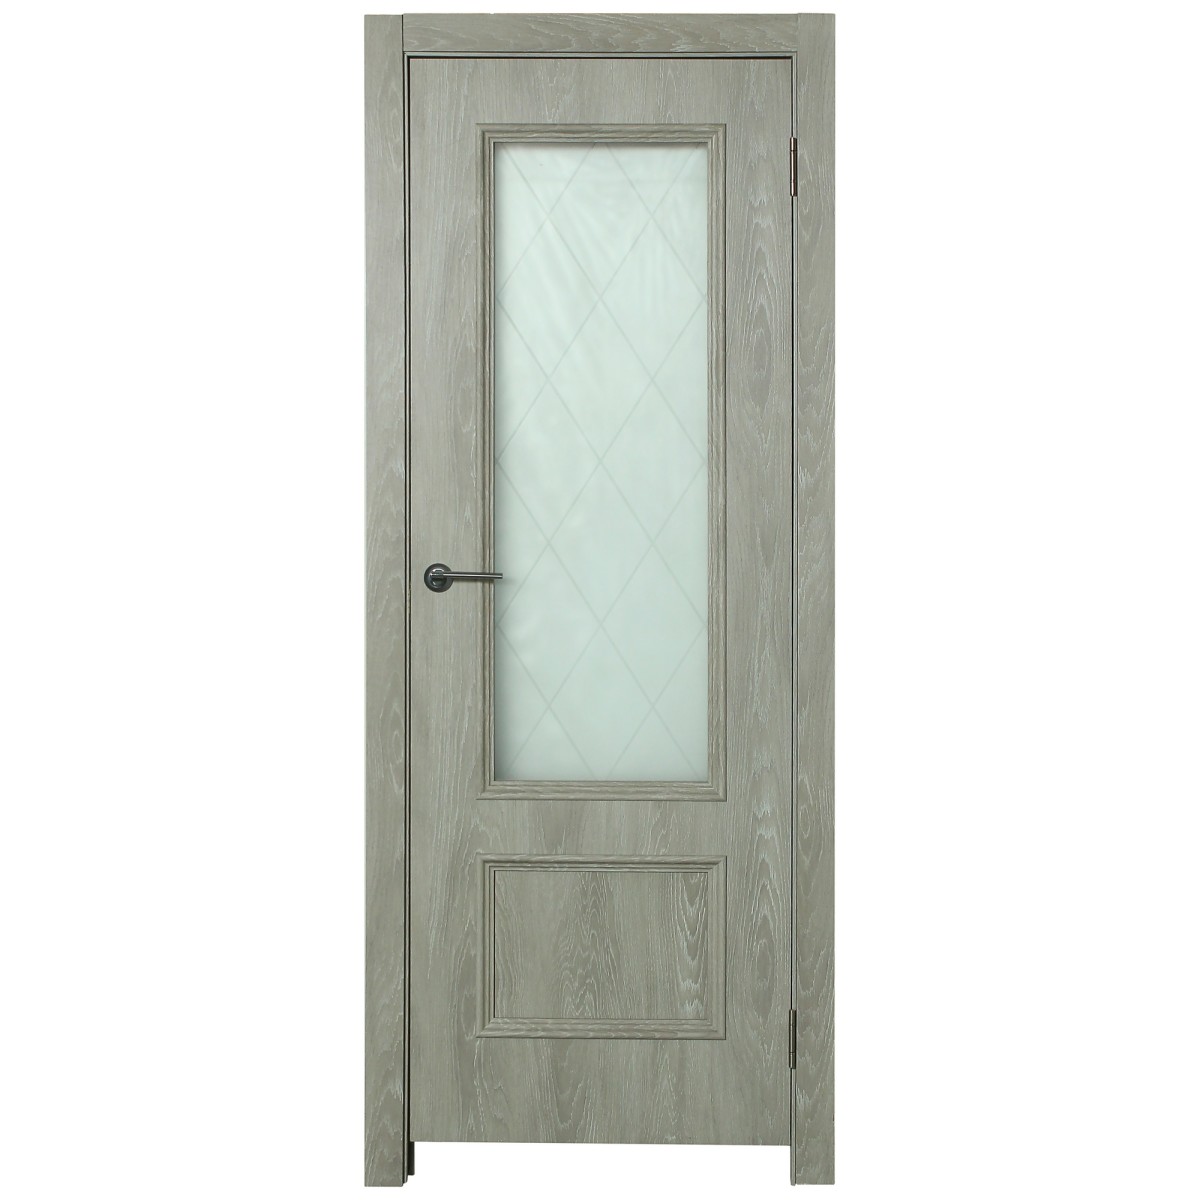 Дверь межкомнатная остеклённая Престиж 60x200 см цвет дуб